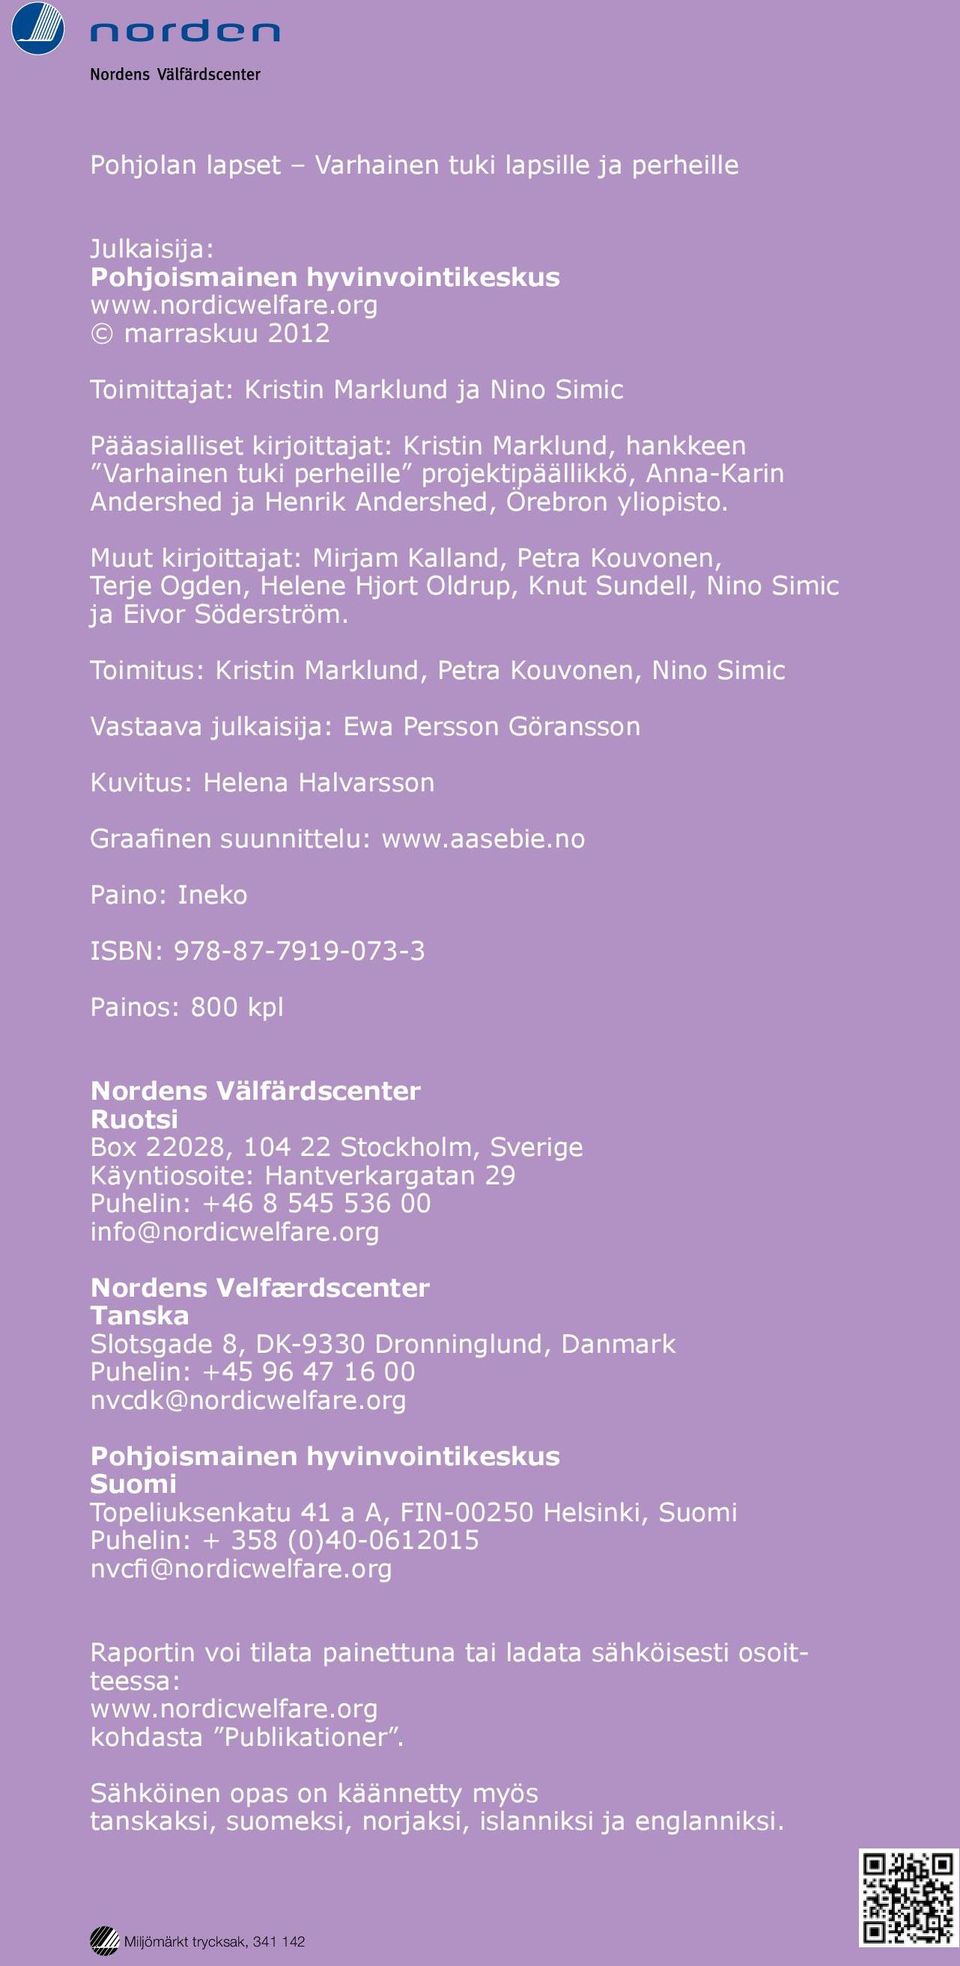 Andershed, Örebron yliopisto. Muut kirjoittajat: Mirjam Kalland, Petra Kouvonen, Terje Ogden, Helene Hjort Oldrup, Knut Sundell, Nino Simic ja Eivor Söderström.